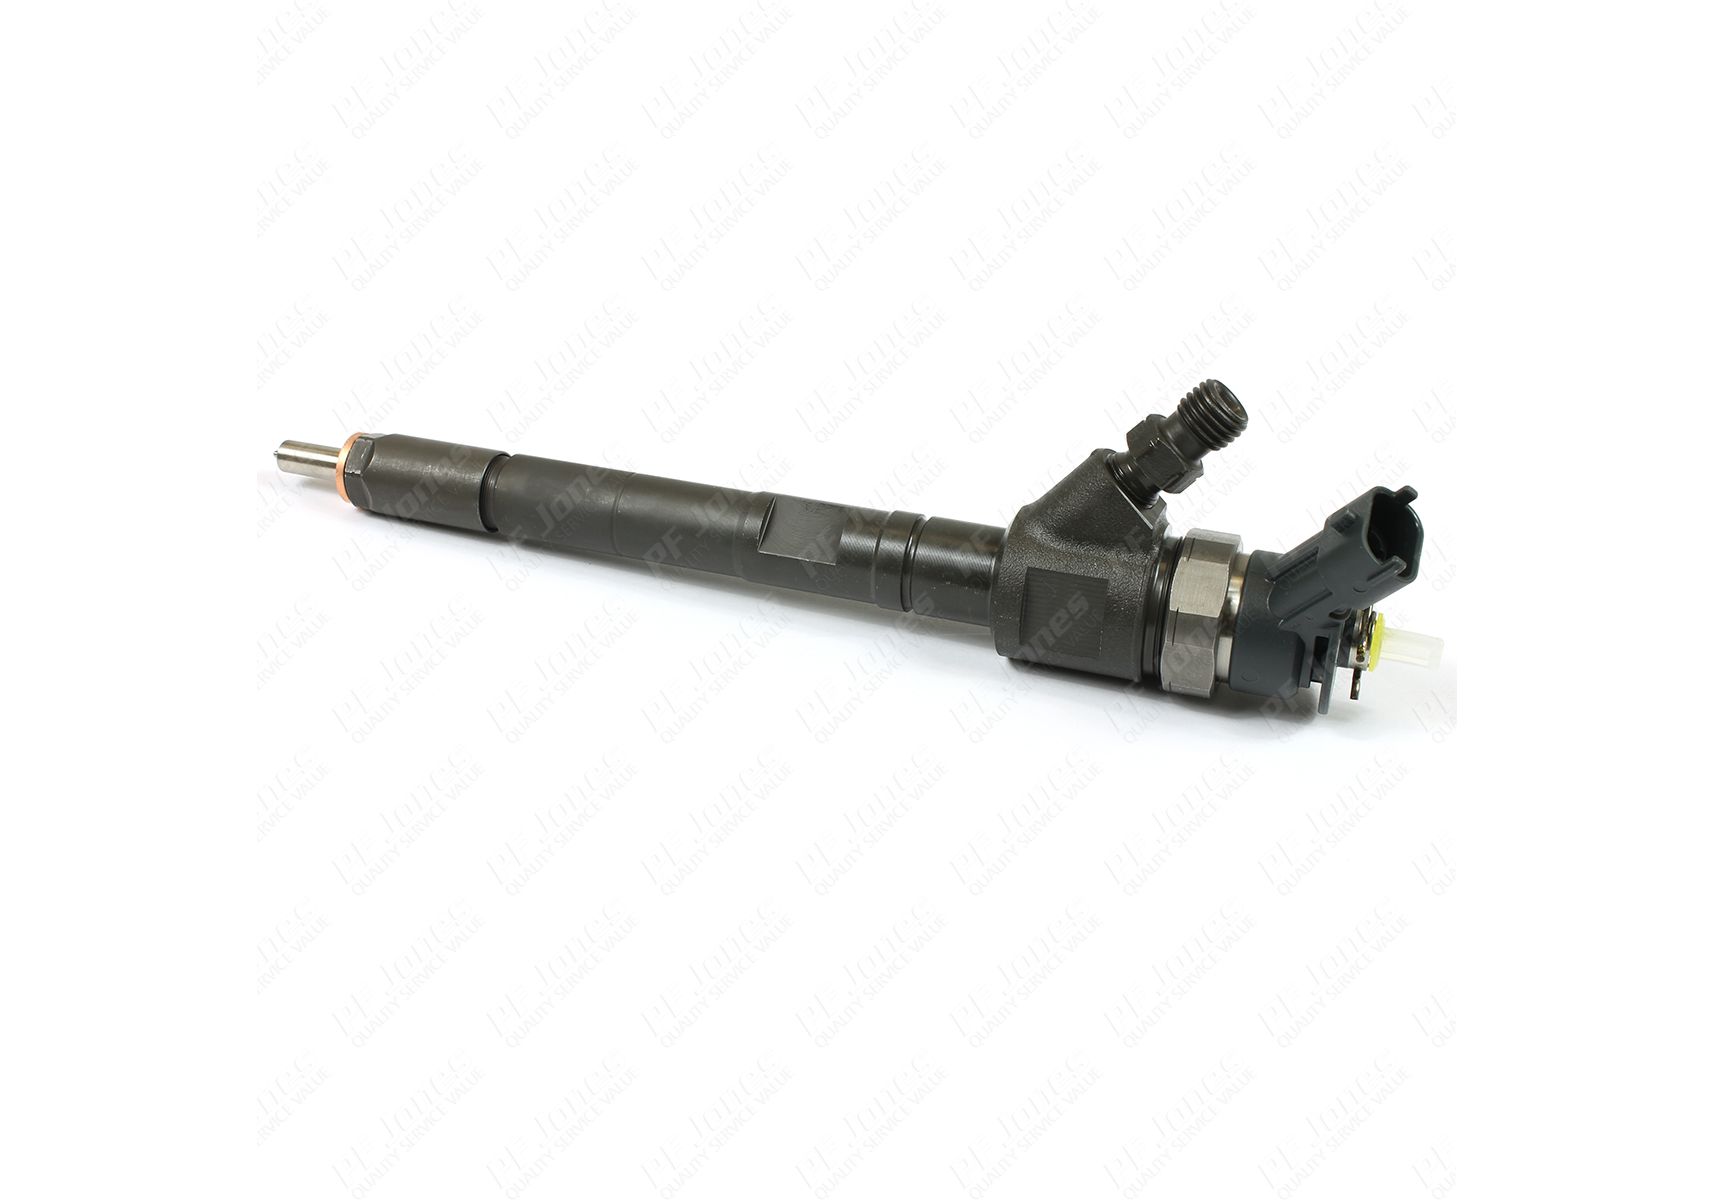 New/Original BOSCH Fuel Injector PEUGEOT PARTNER 1.6 HDi 2008- 0445110311